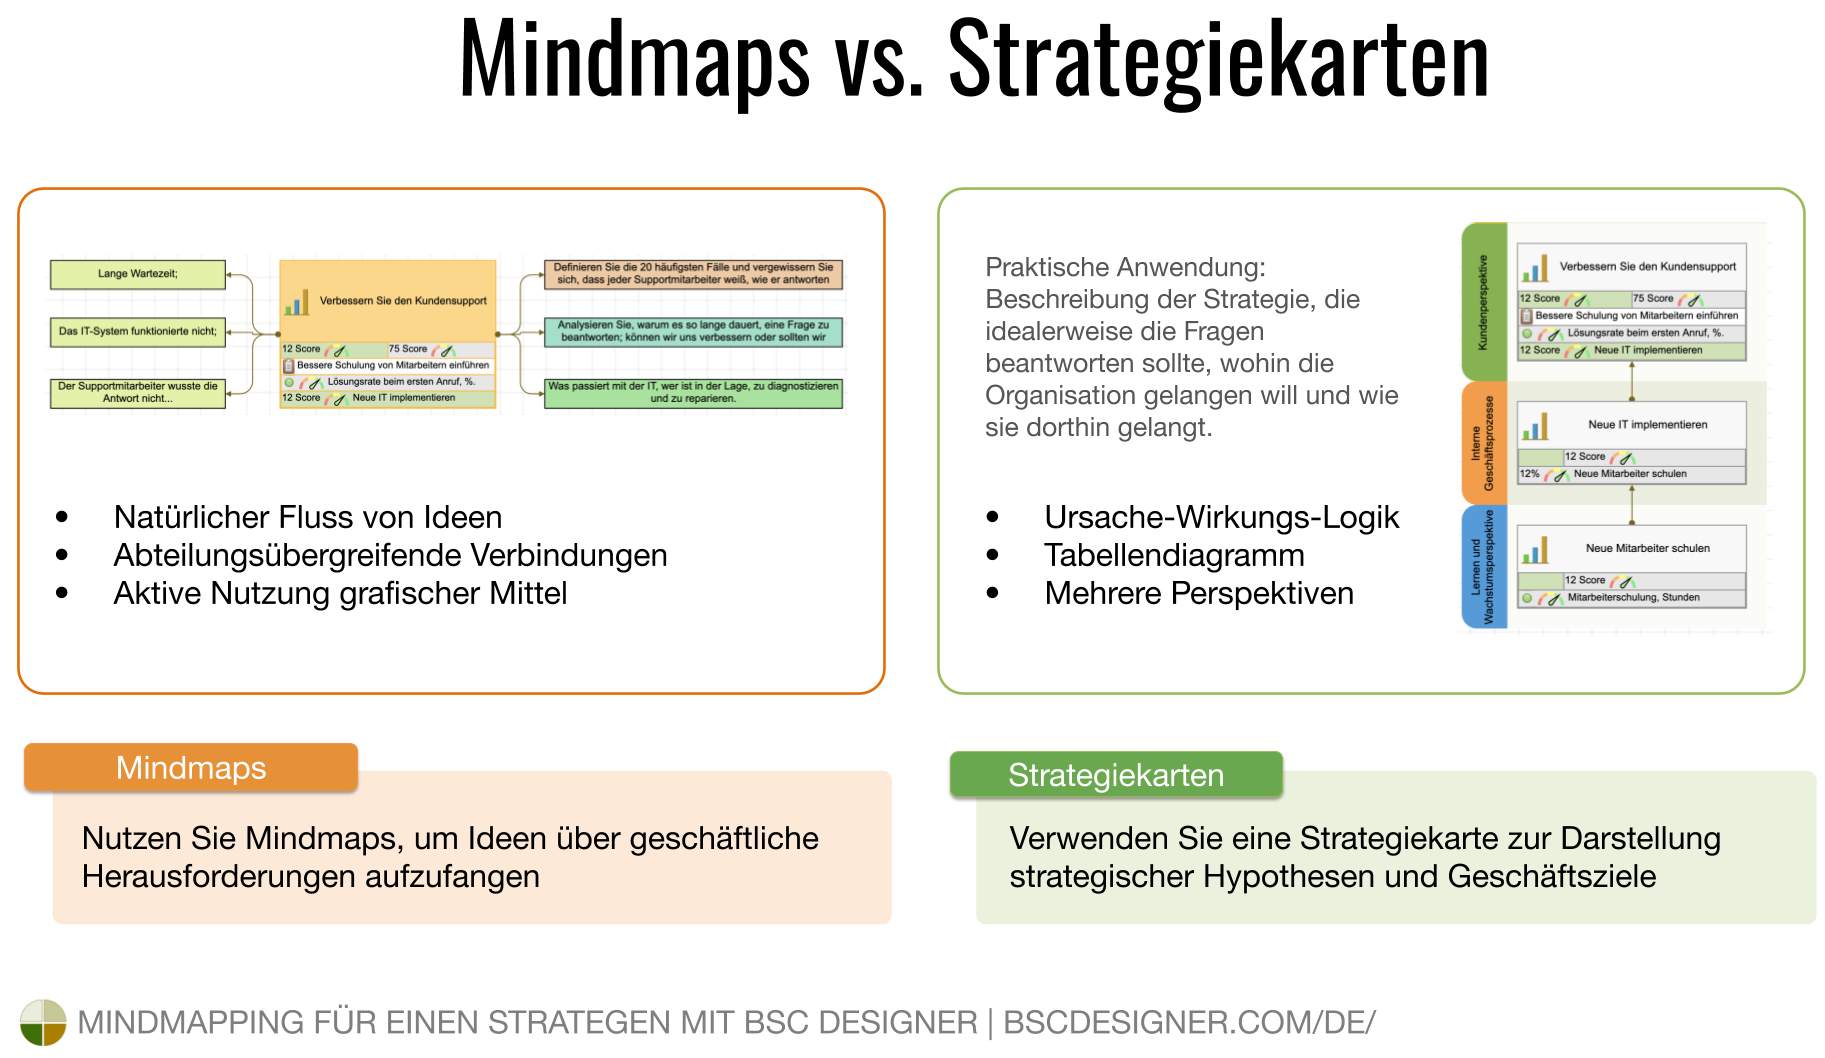 Fangen Sie zufällige Ideen mit einer Mindmap ein und präsentieren Sie Geschäftsziele mit einer Ursache-Wirkungs-Logik auf einer Strategiekarte.